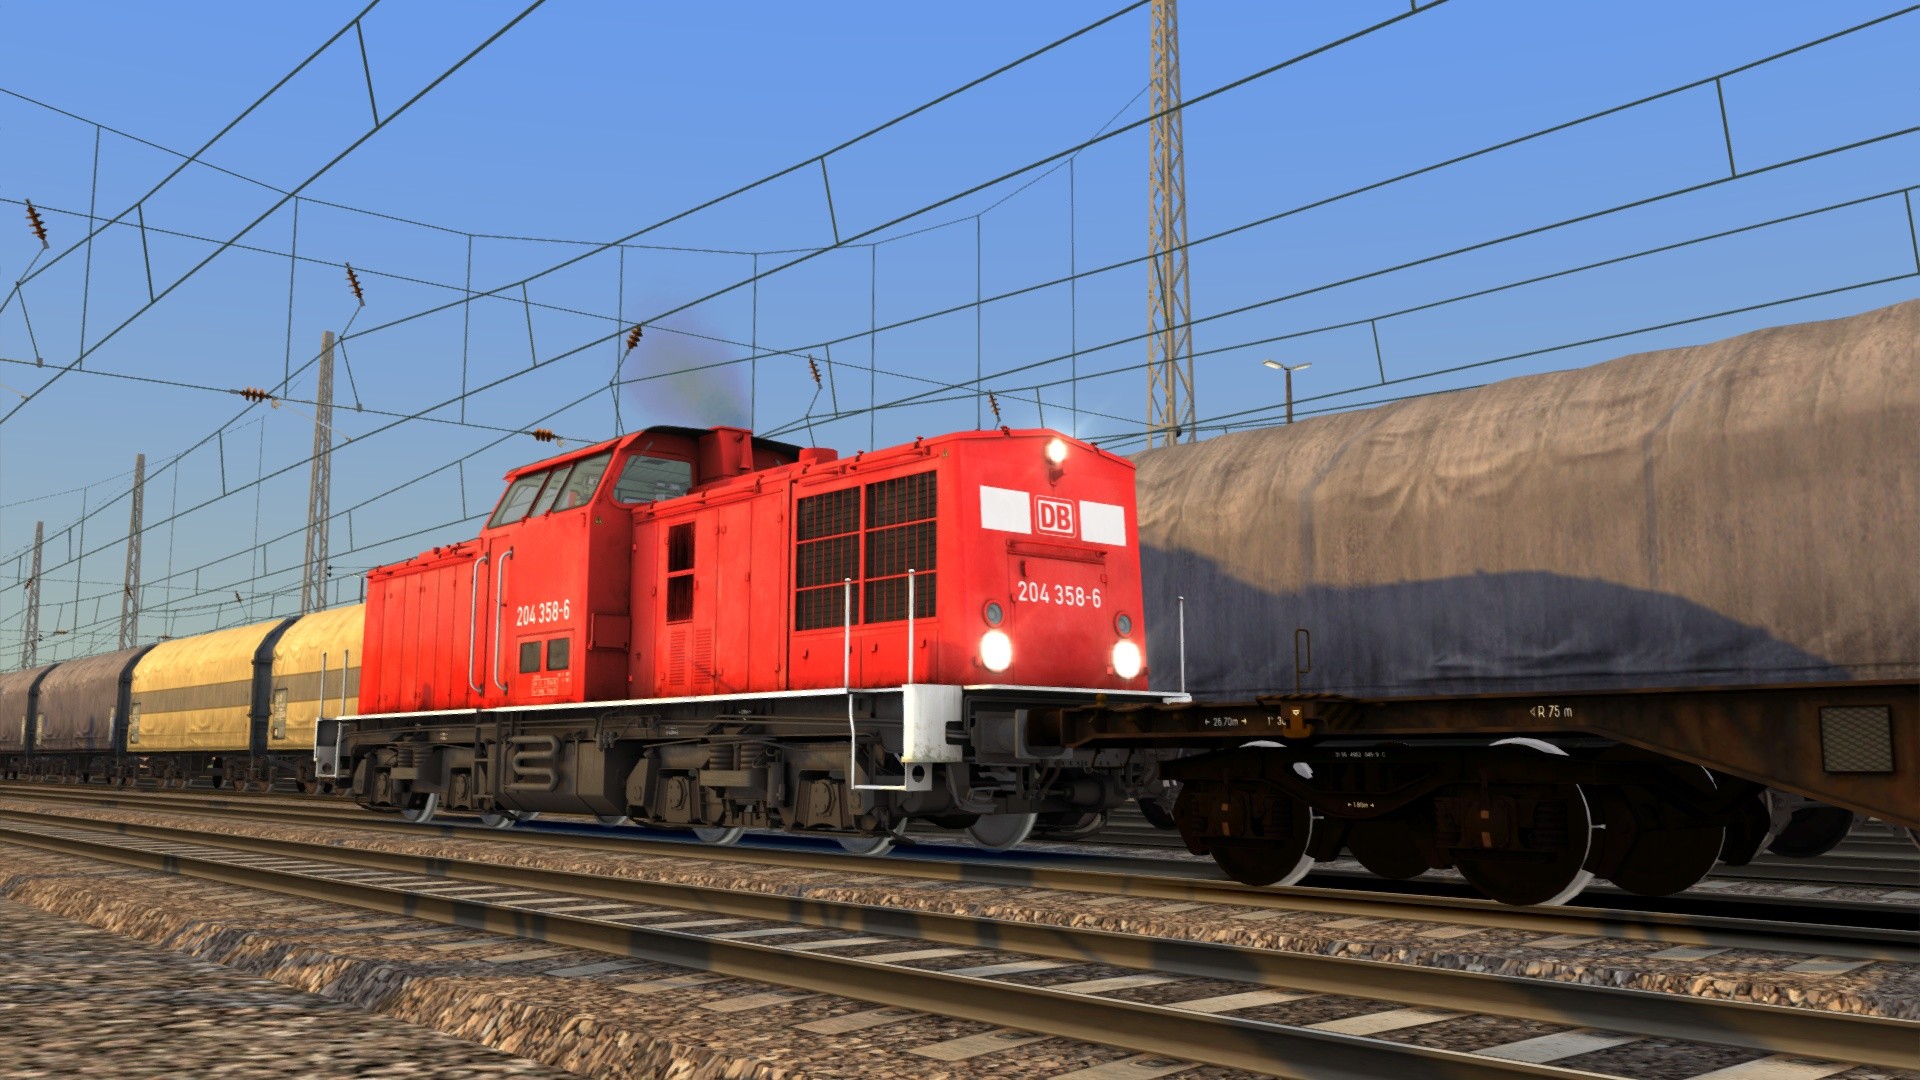 Train Simulator - DB BR 204 Loco Add-On DLC Steam CD Key 0.9$